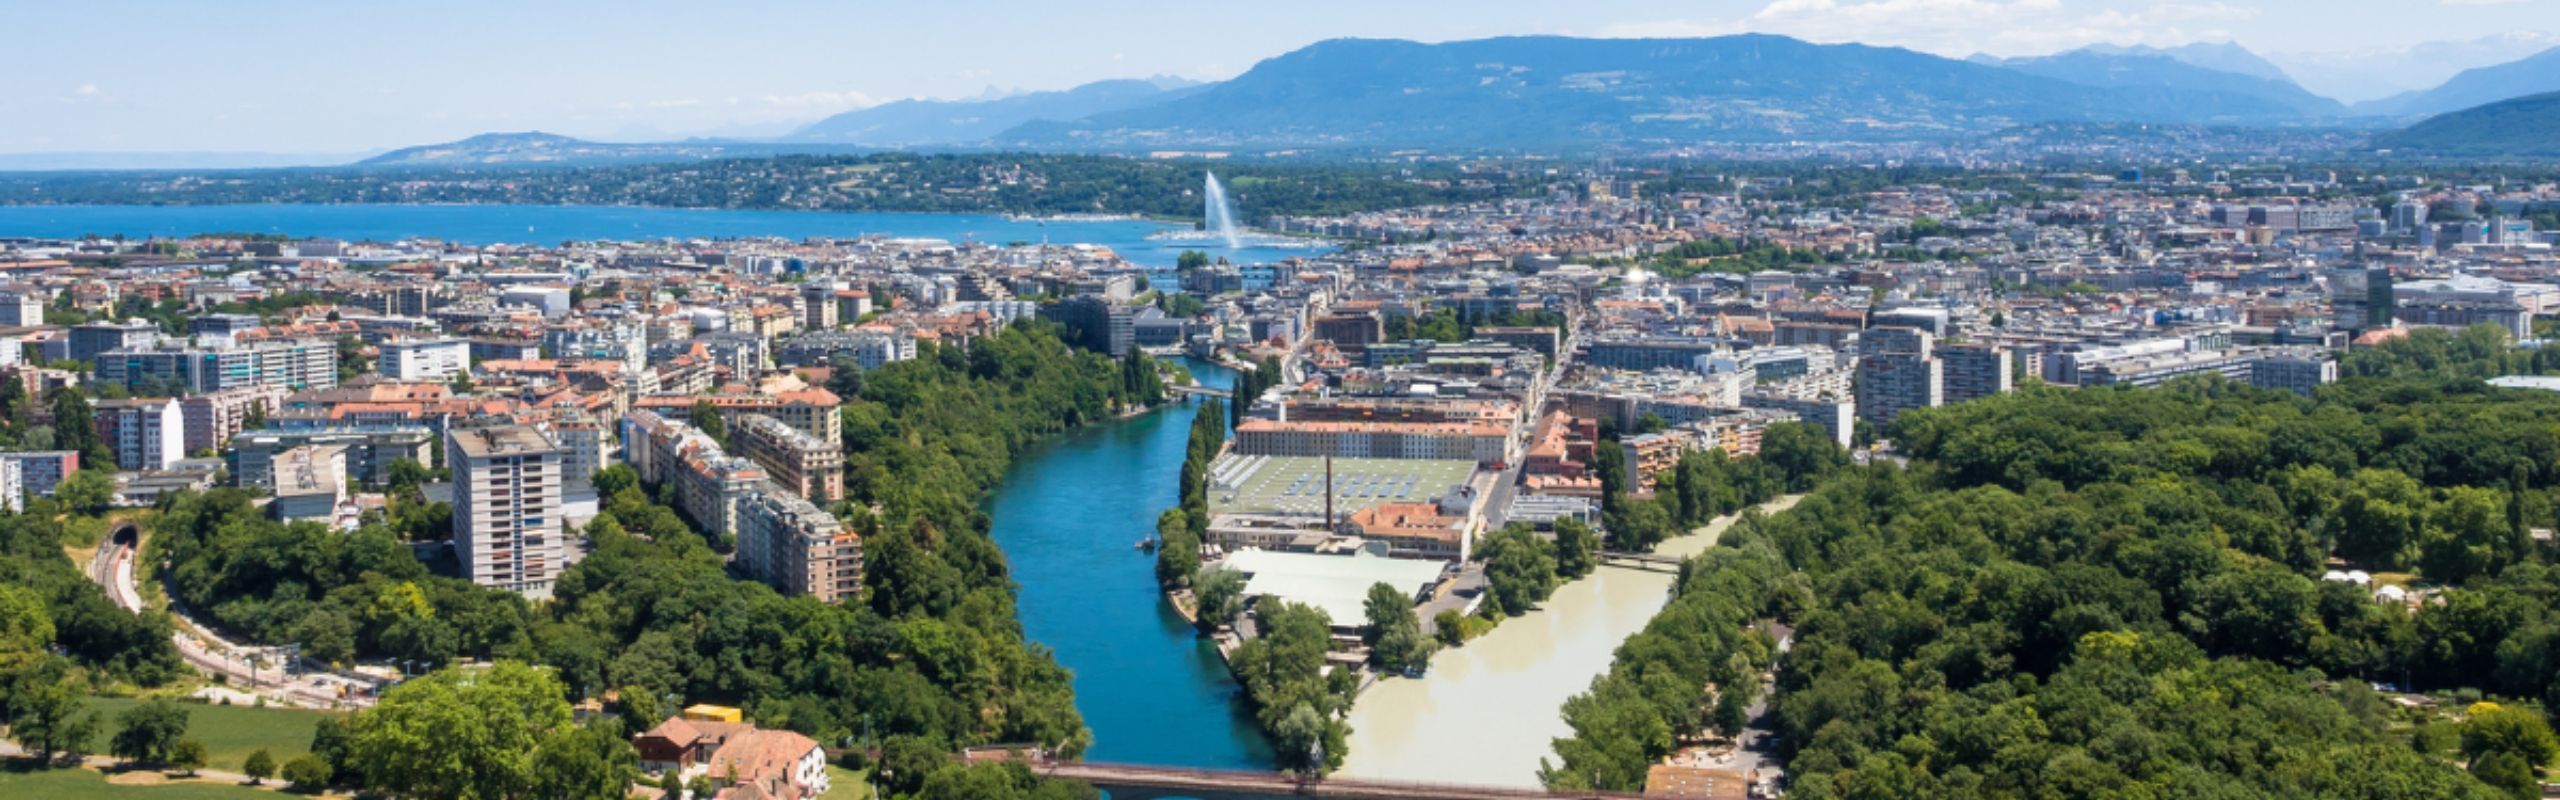 Aerial view of Geneva, Switzerland with lake